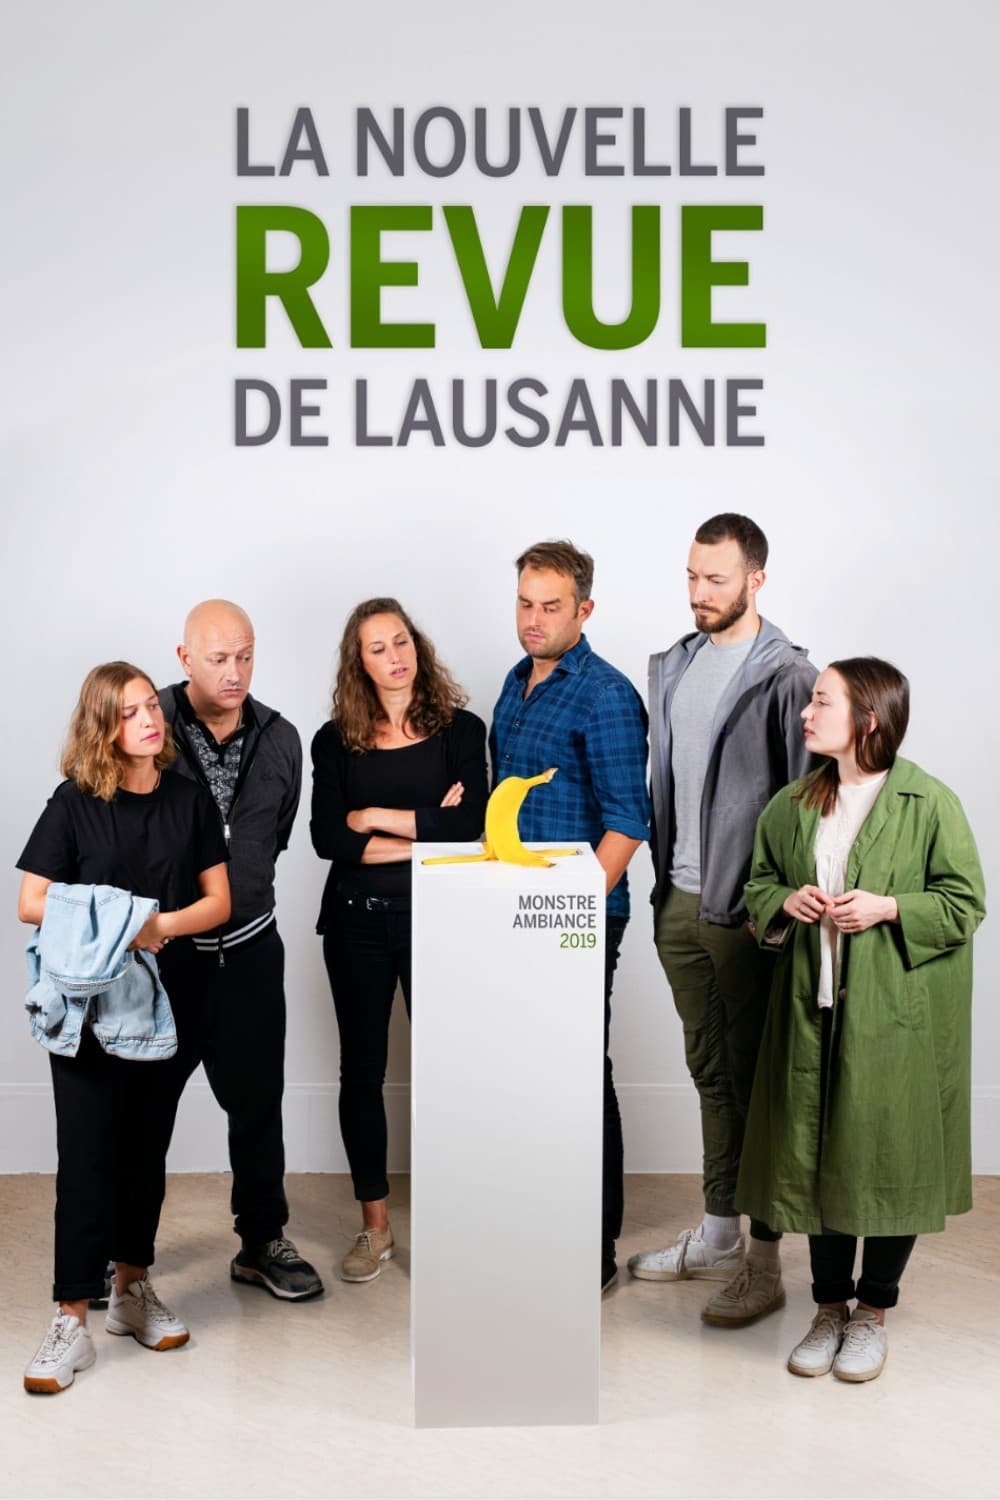 La Nouvelle Revue de Lausanne 2019 - Monstre ambiance